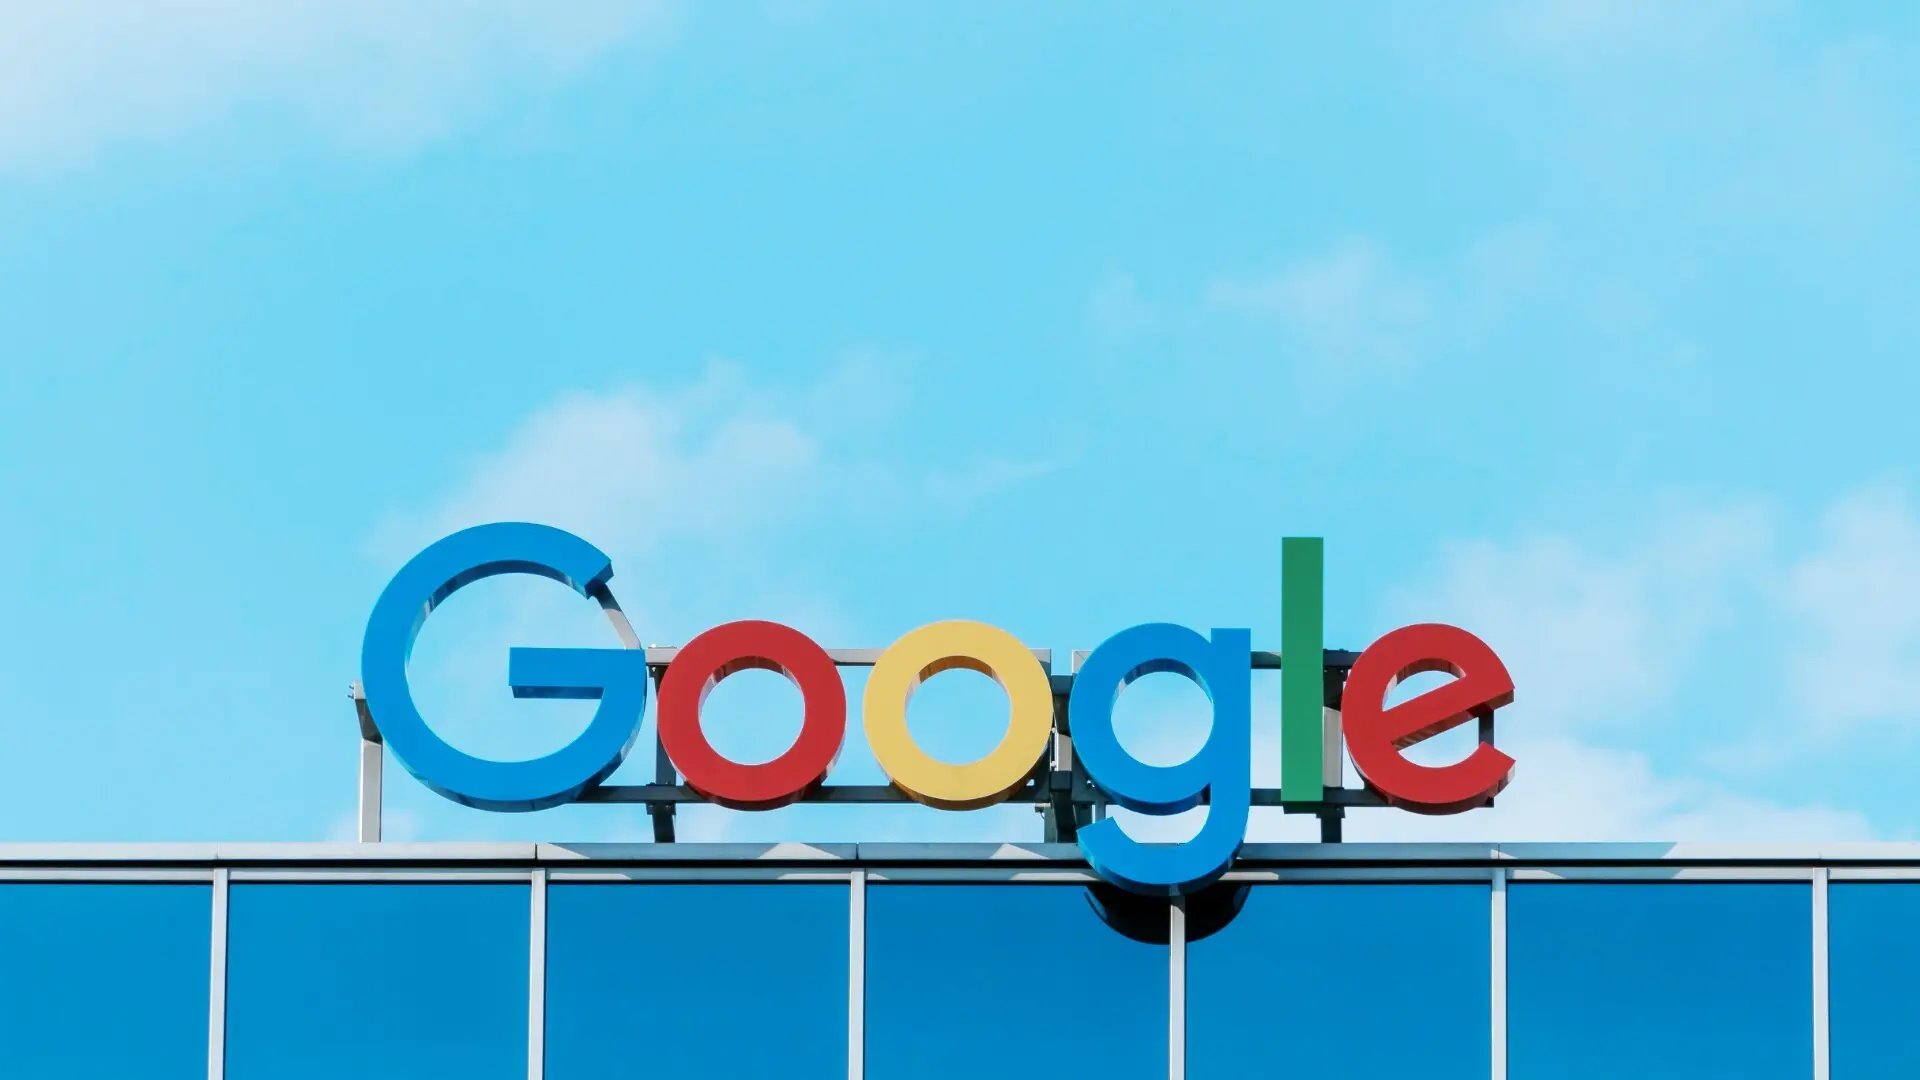 25 lat Google – Czy niepokorny król wyszukiwania zostanie wkrótce zastąpiony?